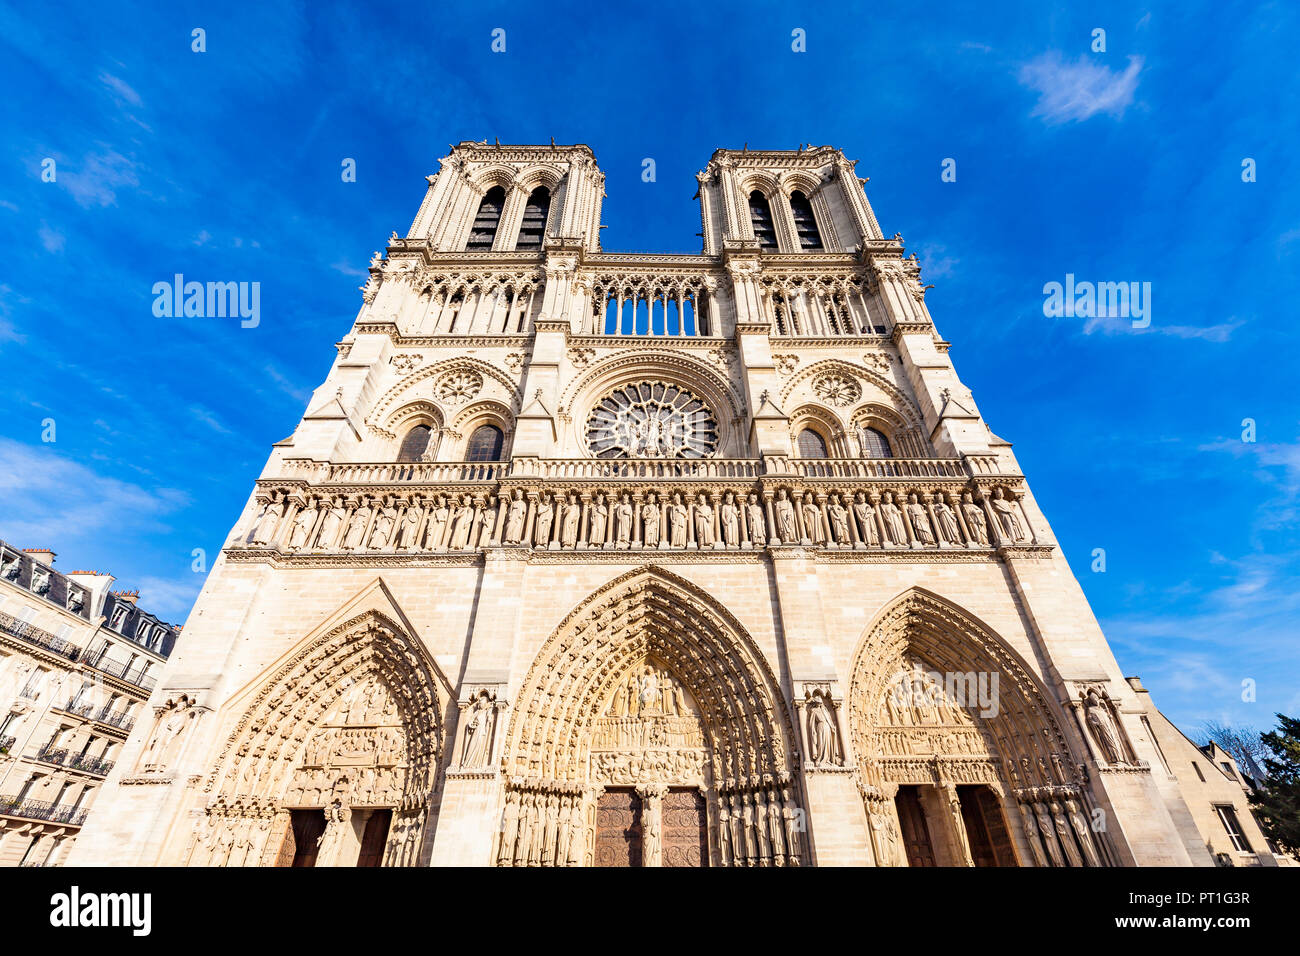 France, Paris, Notre Dame church Stock Photo